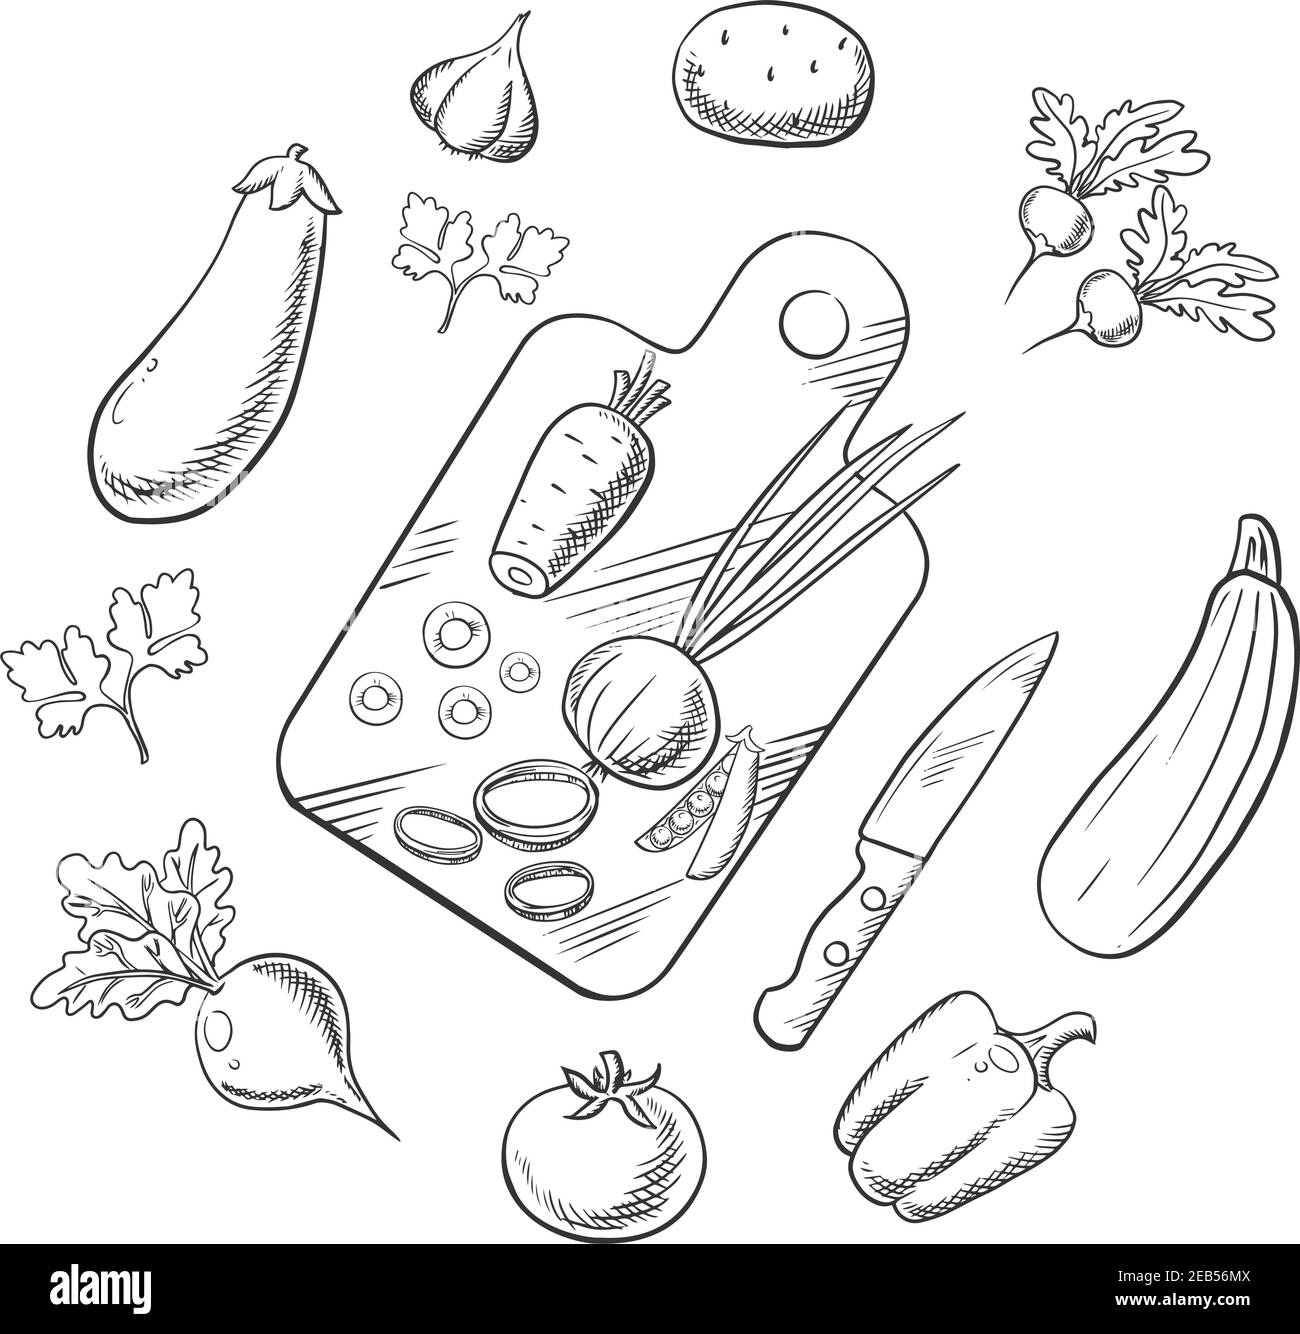 Processus de cuisson d'une salade végétarienne avec couteau, planche à découper et tomate, carotte et pois, oignon et pomme de terre, poivron, ail et radis, et betterave Illustration de Vecteur